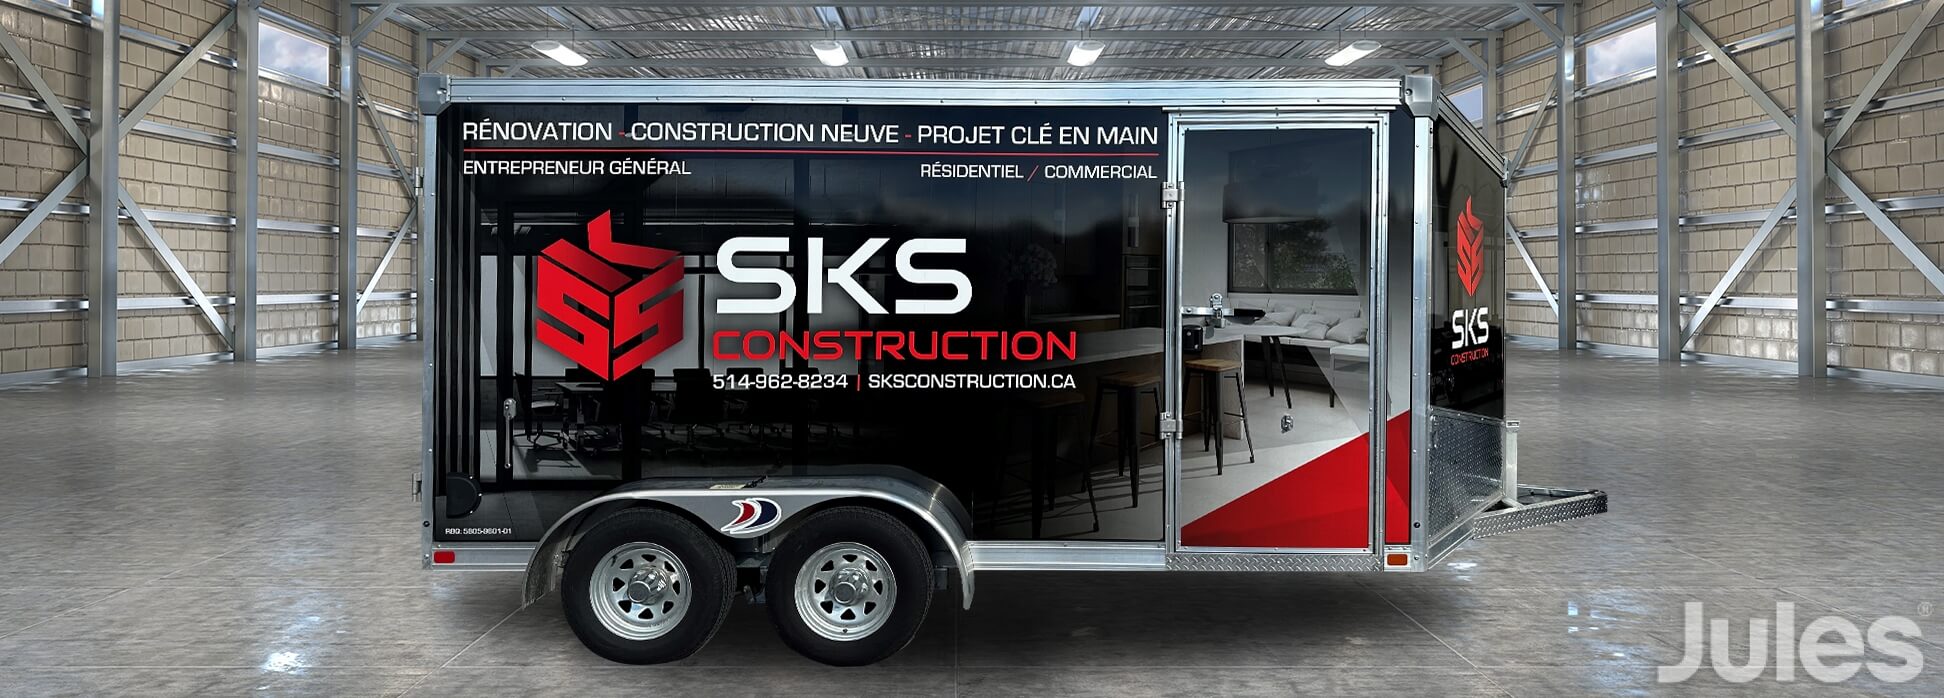 SKS CONSTRUCTION LETTRAGE REMORQUE WRAP RENOVATION CONSTRUCTION NEUVE PROJET CLE EN MAIN ENTREPRENEUR GENERAL RESIDENTIEL COMMERCIAL